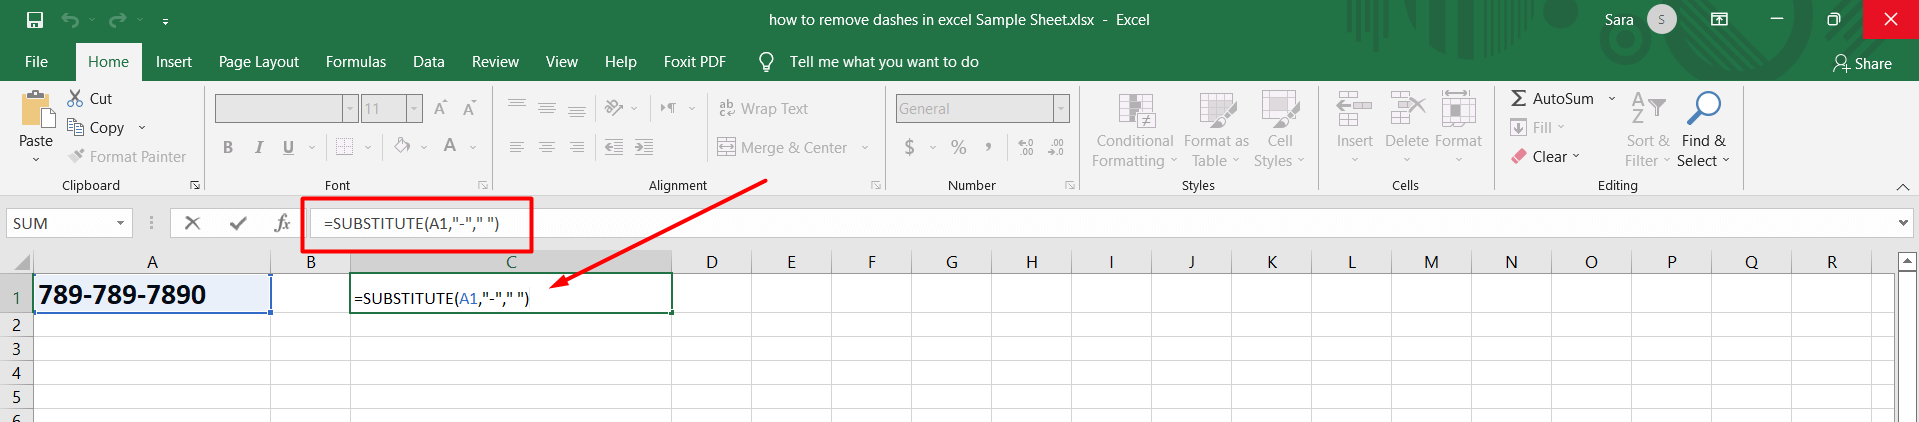 Cách xóa dấu gạch ngang trong google sheet